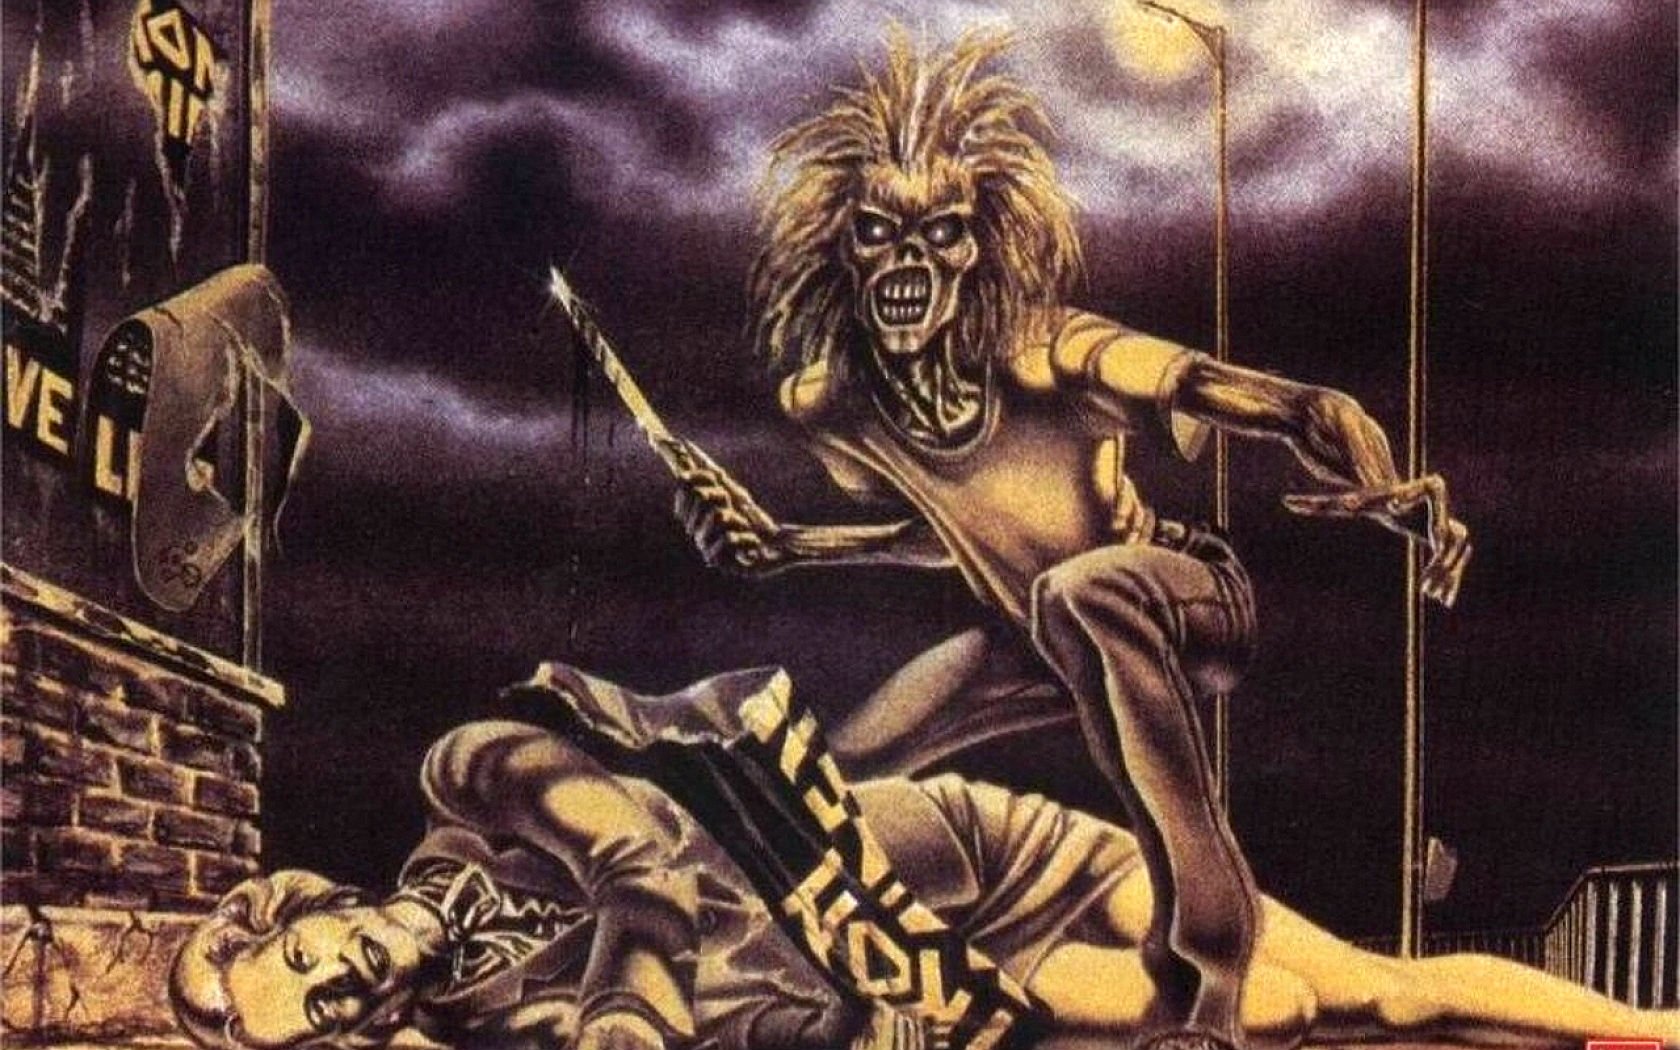 Iron Maiden 1978